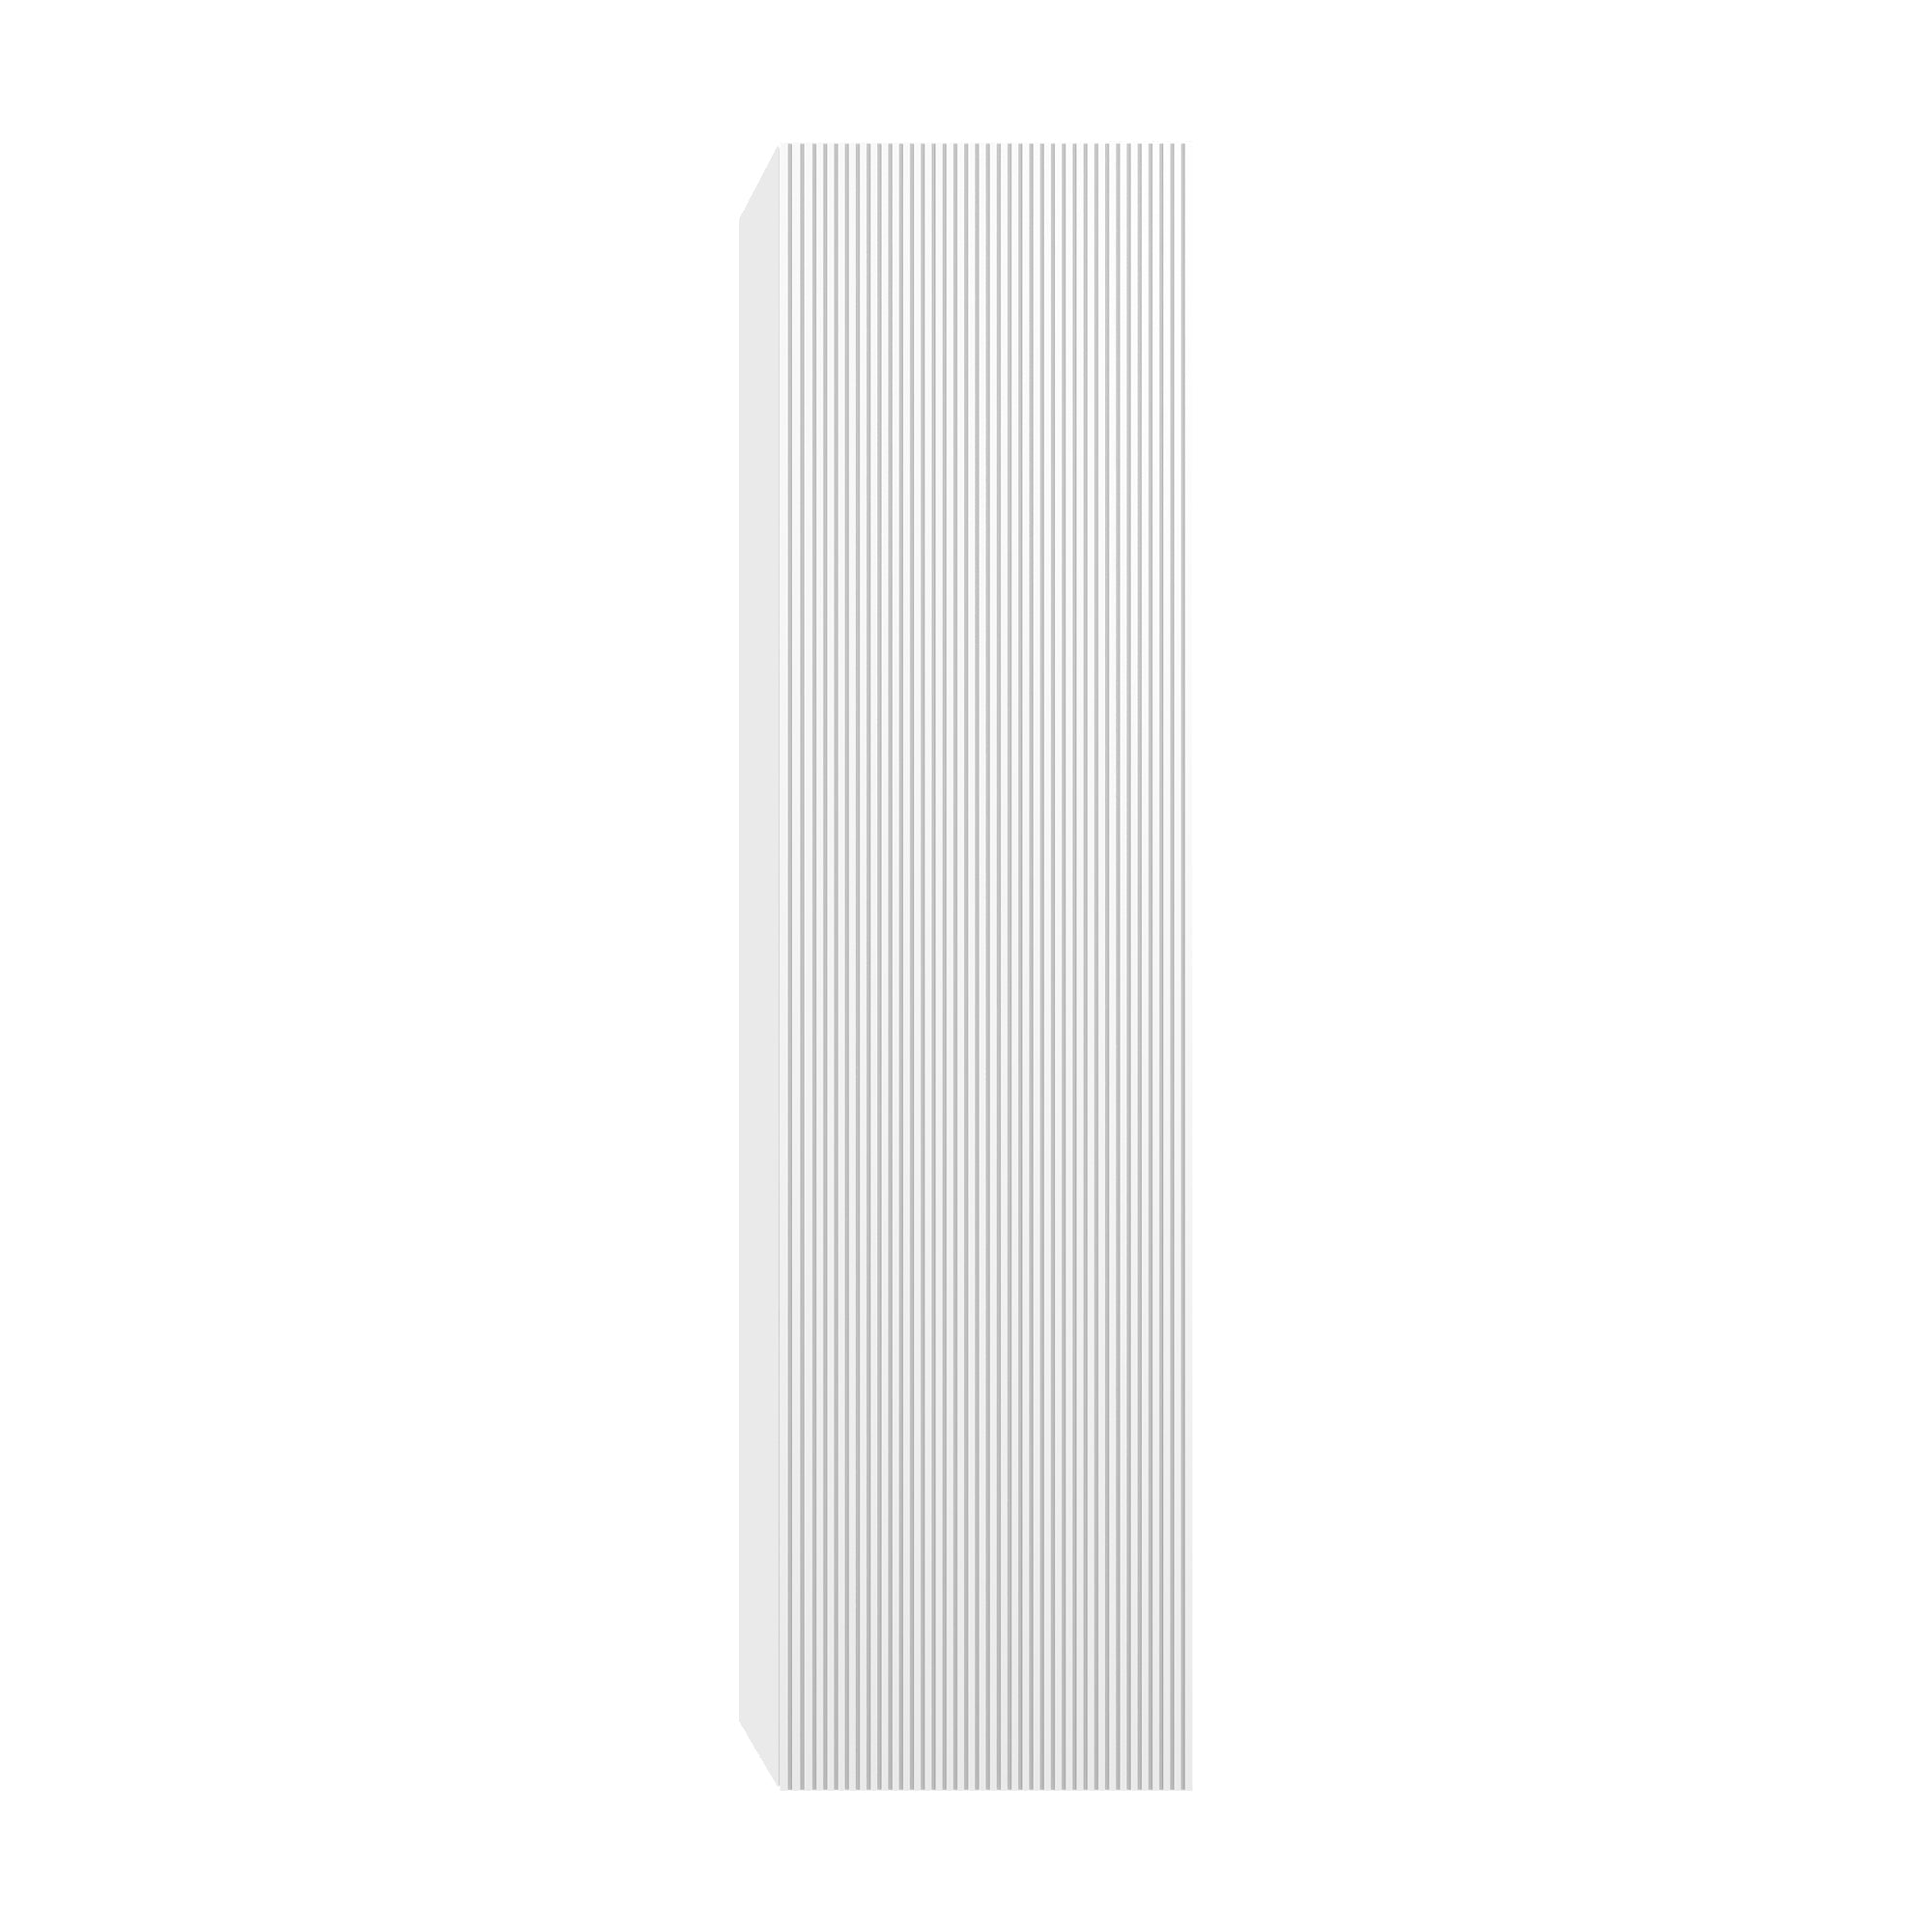 Positano 12″ Side Cabinet #size_12"  #color_matte white